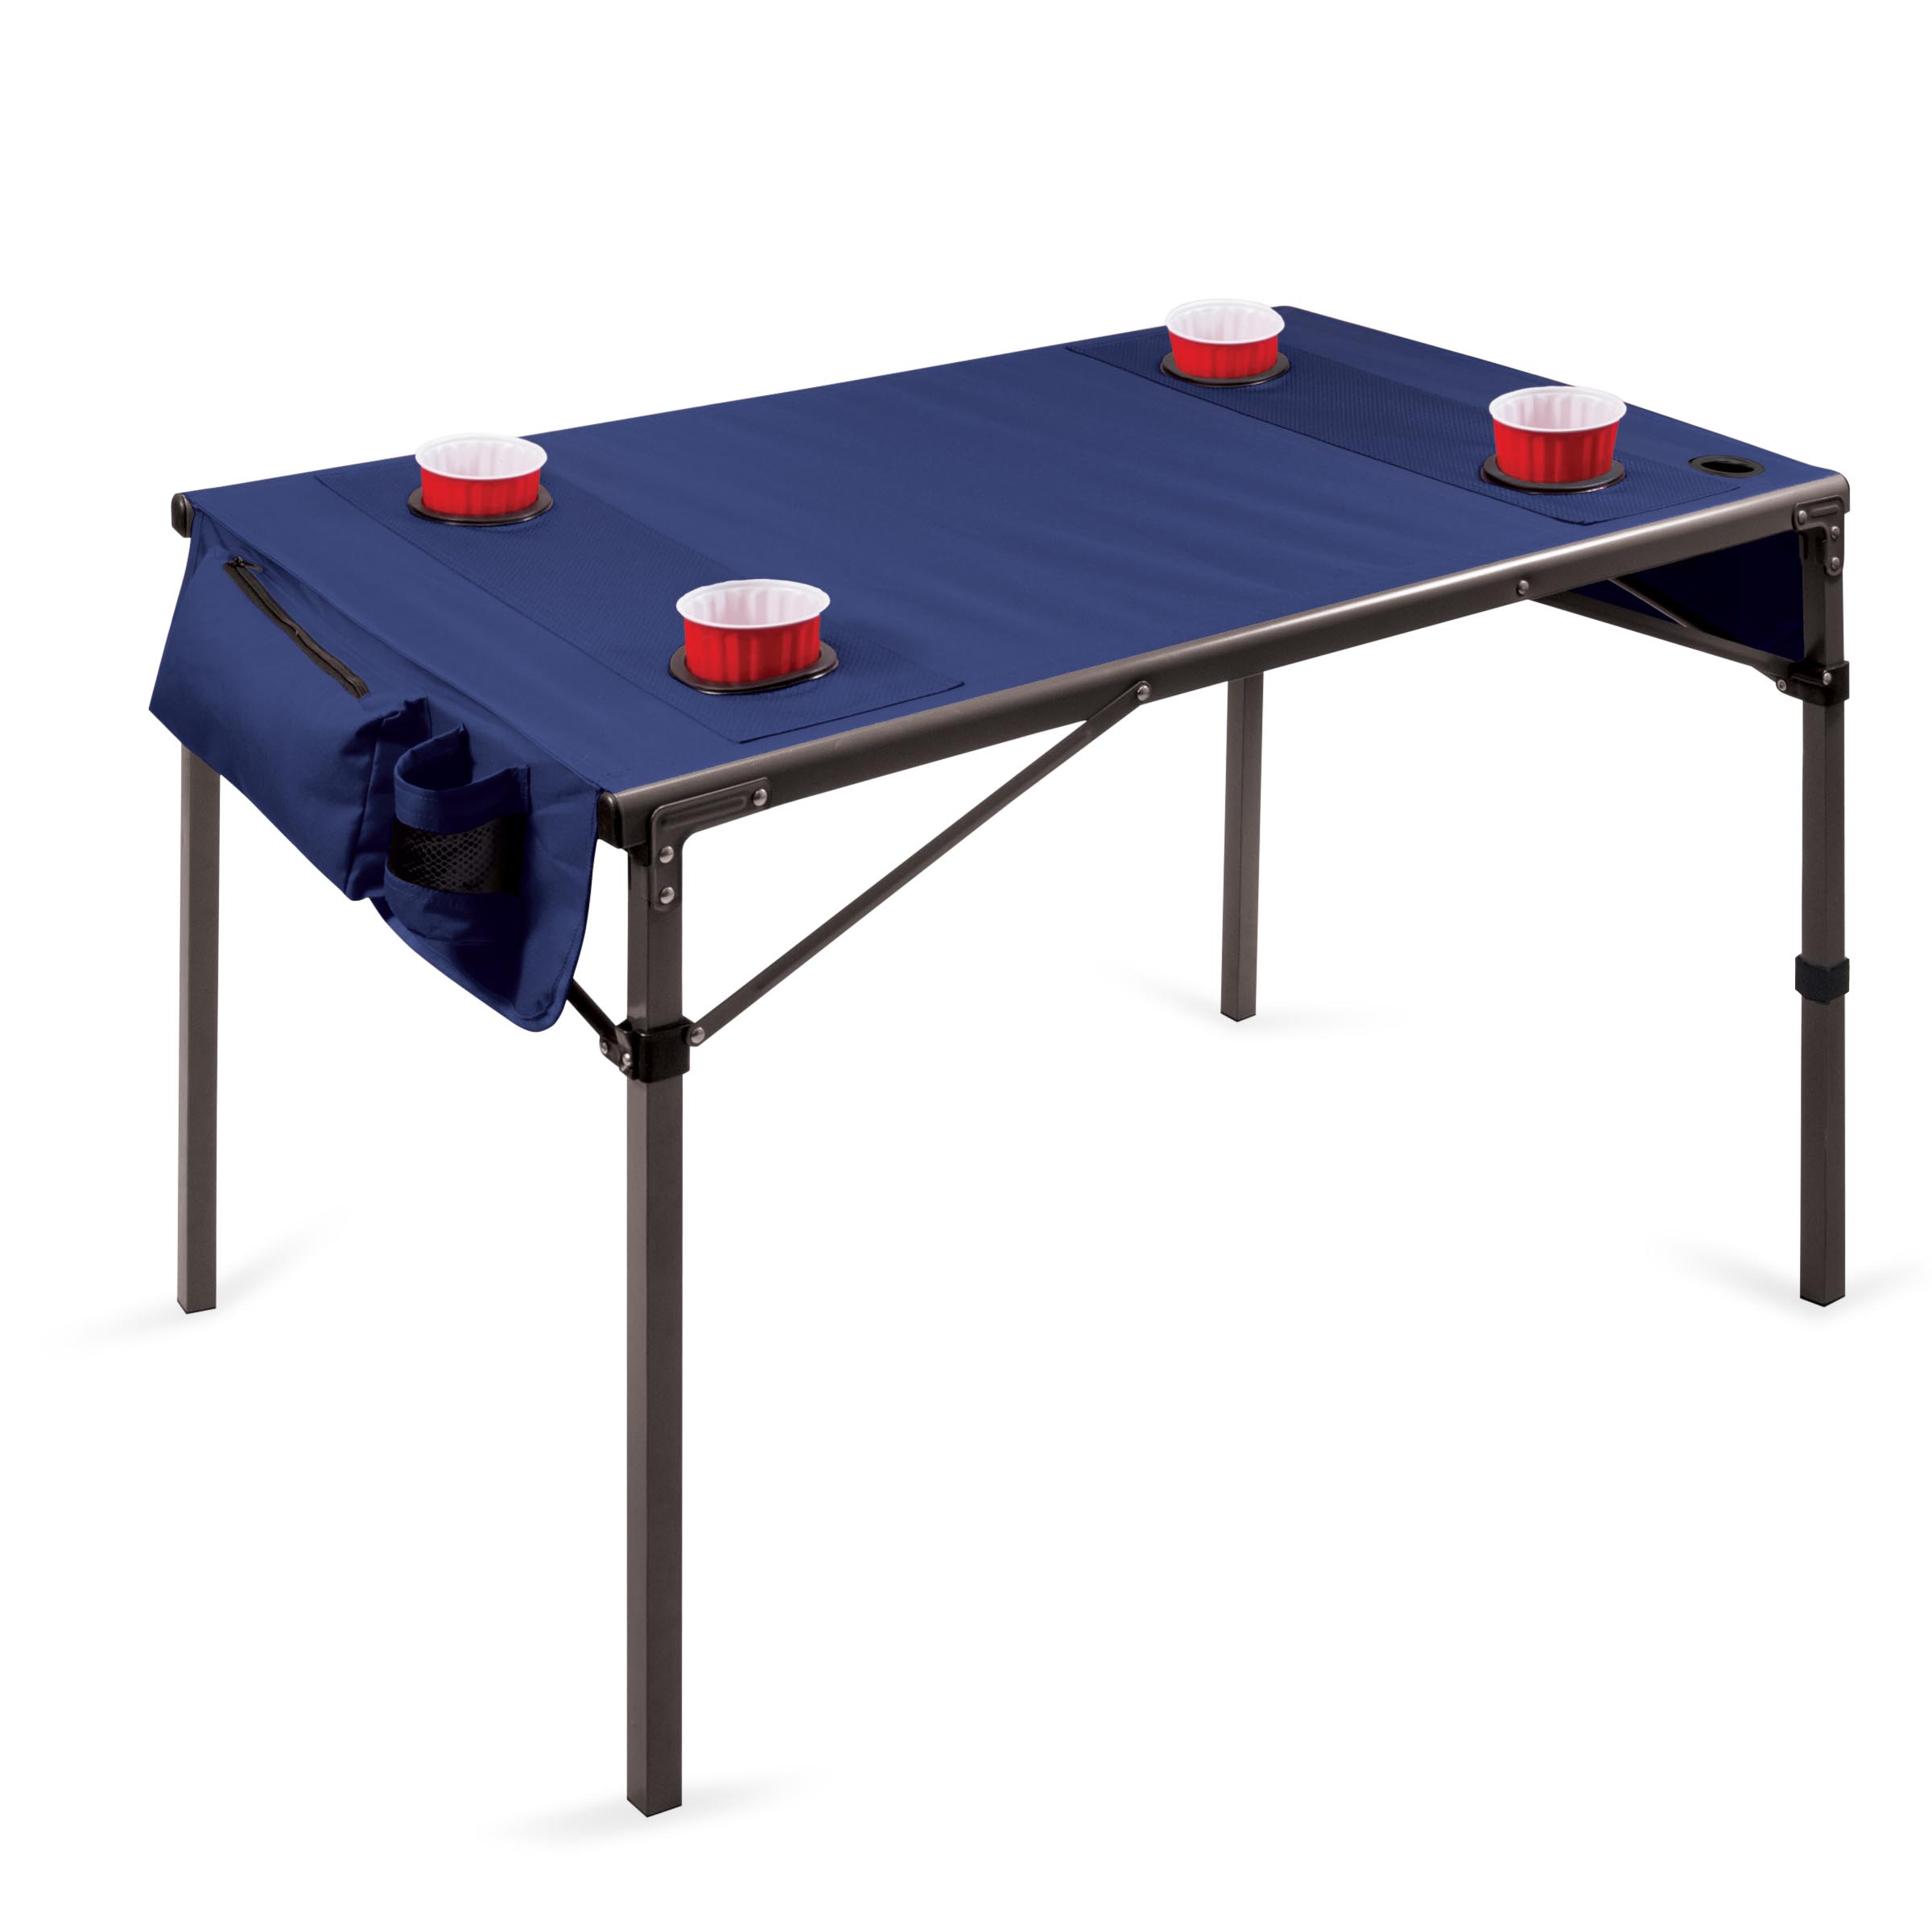 【美國Picnic Time】TRAVEL TABLE 超輕量野餐折疊桌(藍)